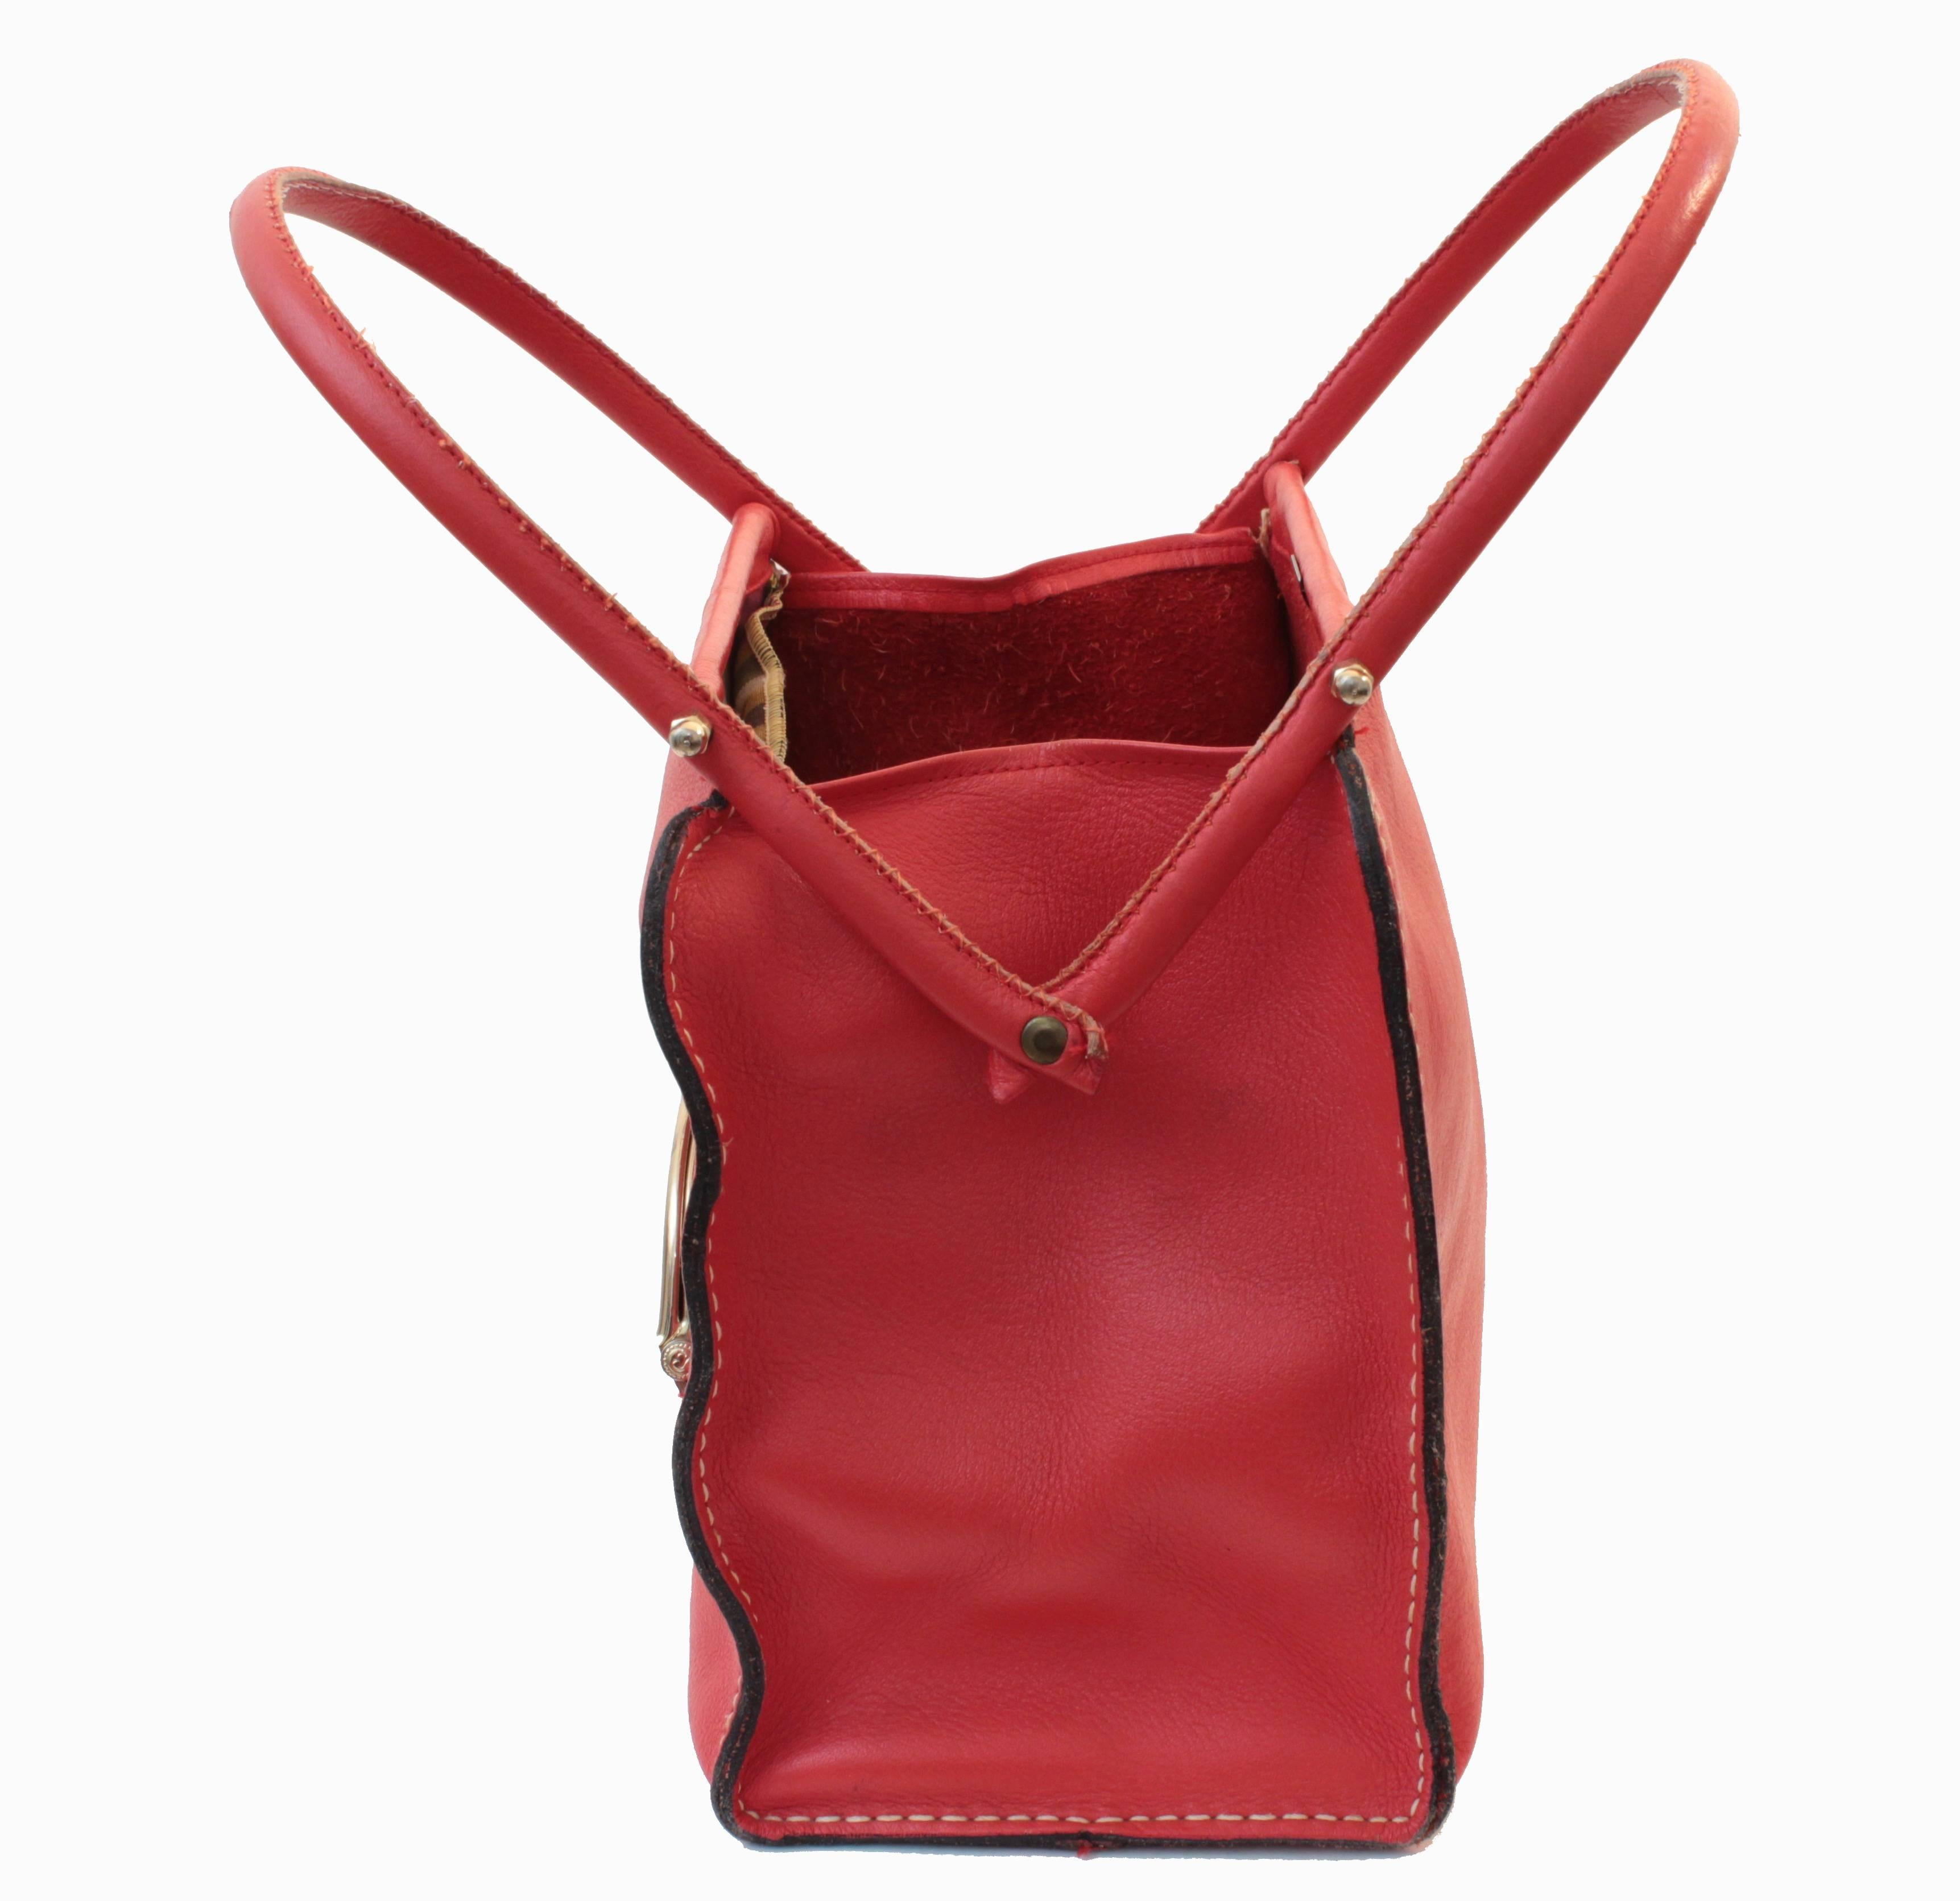 Bonnie Cashin pour Coach - Sac fourre-tout en cuir rouge avec cadre ciseau, sac cabas, 1966 1